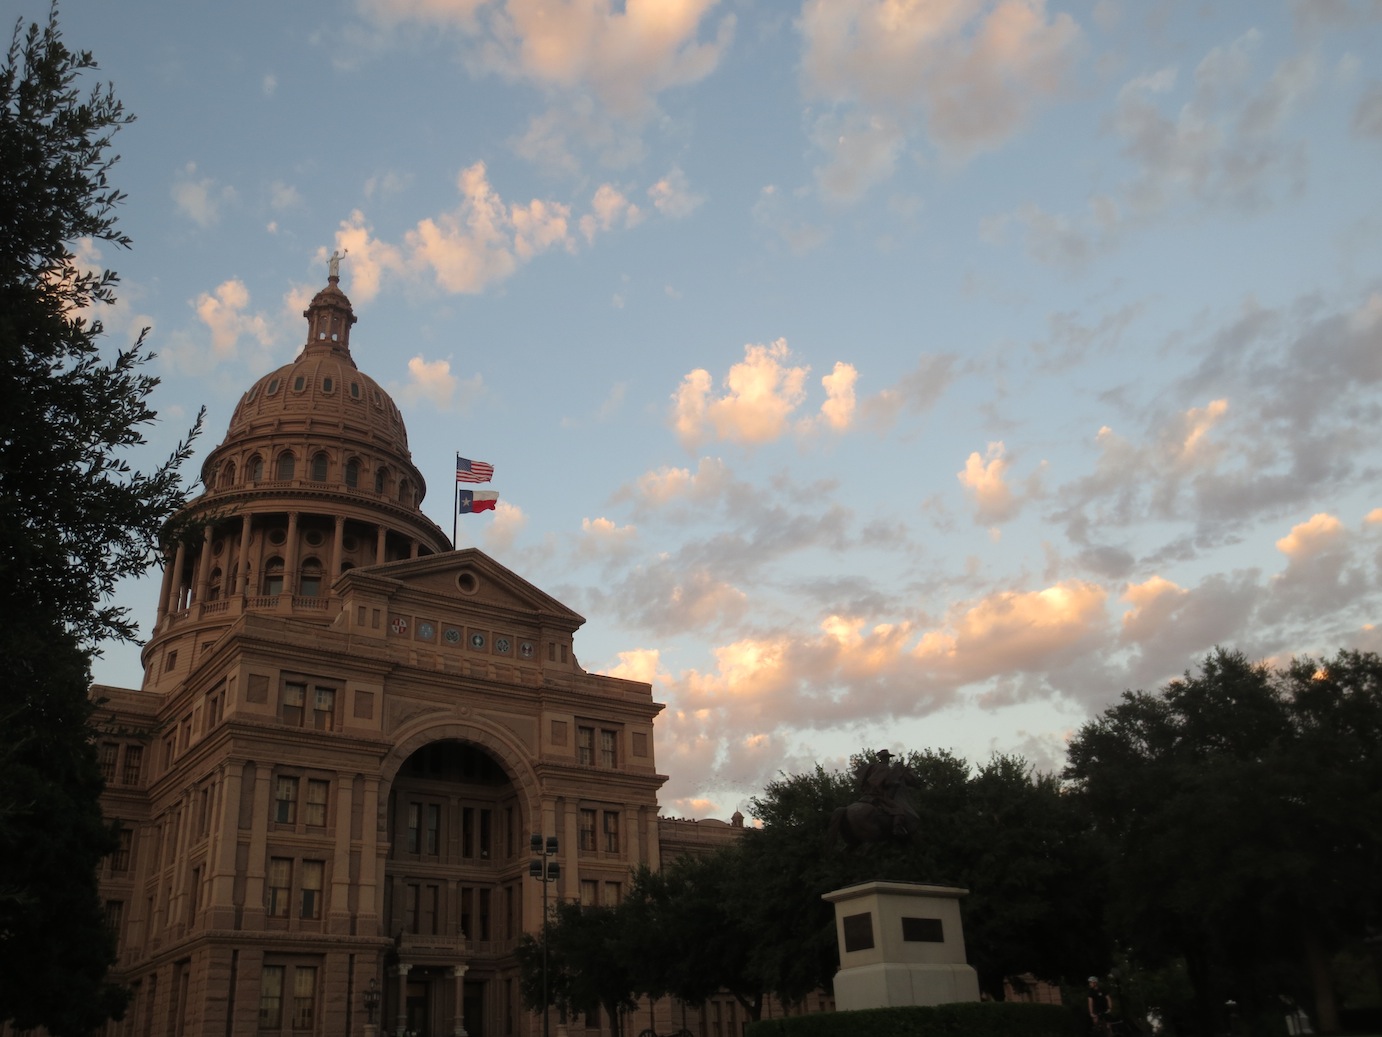 Austin Capitol building at dusk